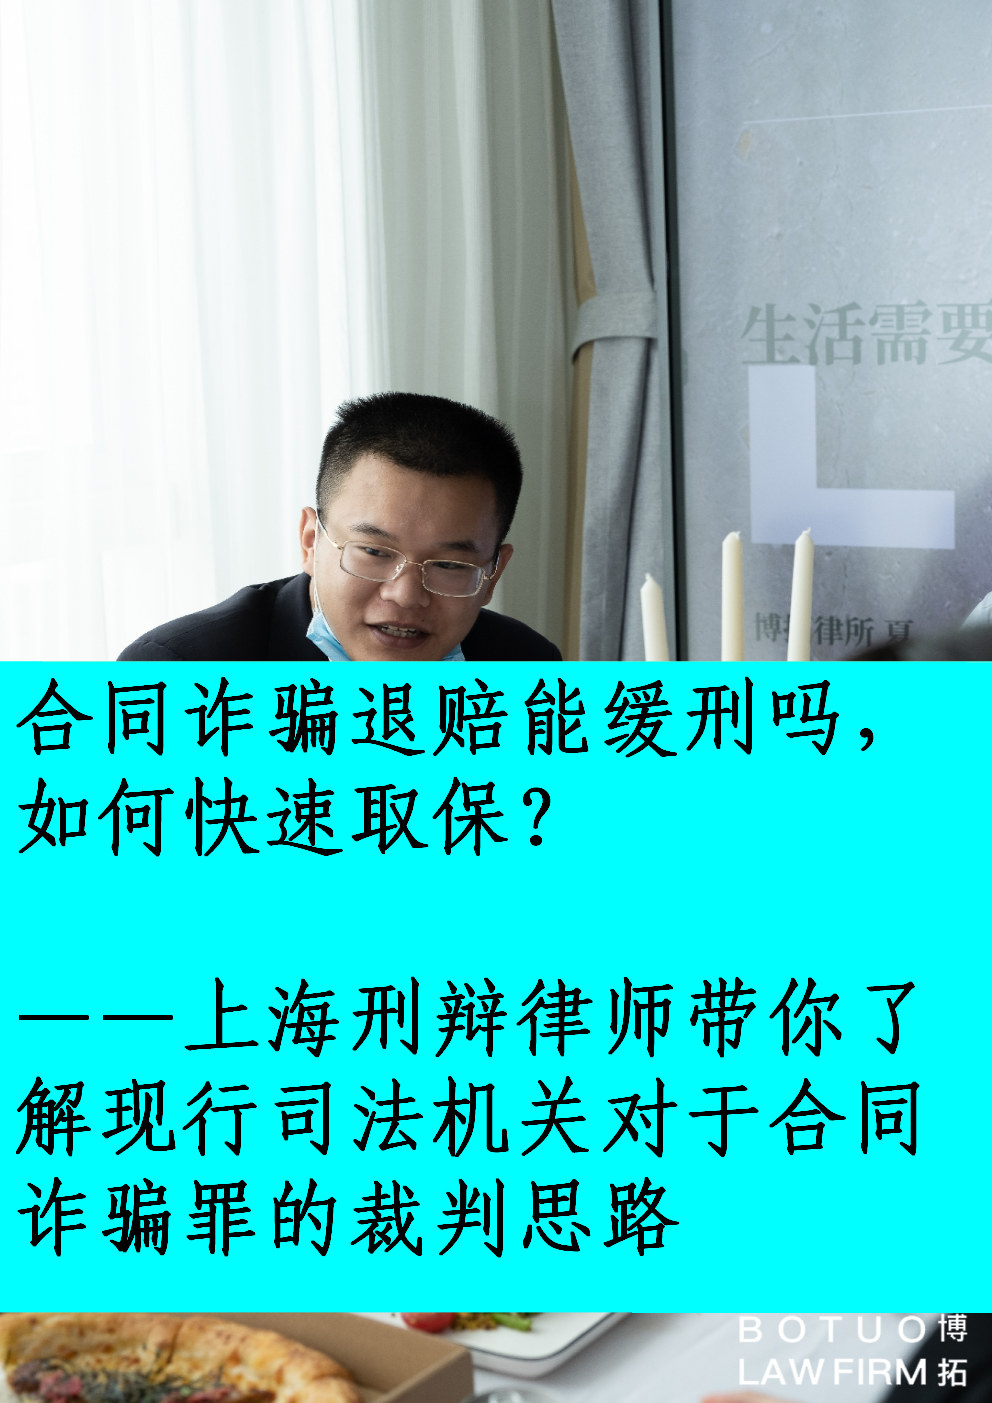 深圳龙华区如何请销售侵权复制品罪辩护律师作辩护？  第1张